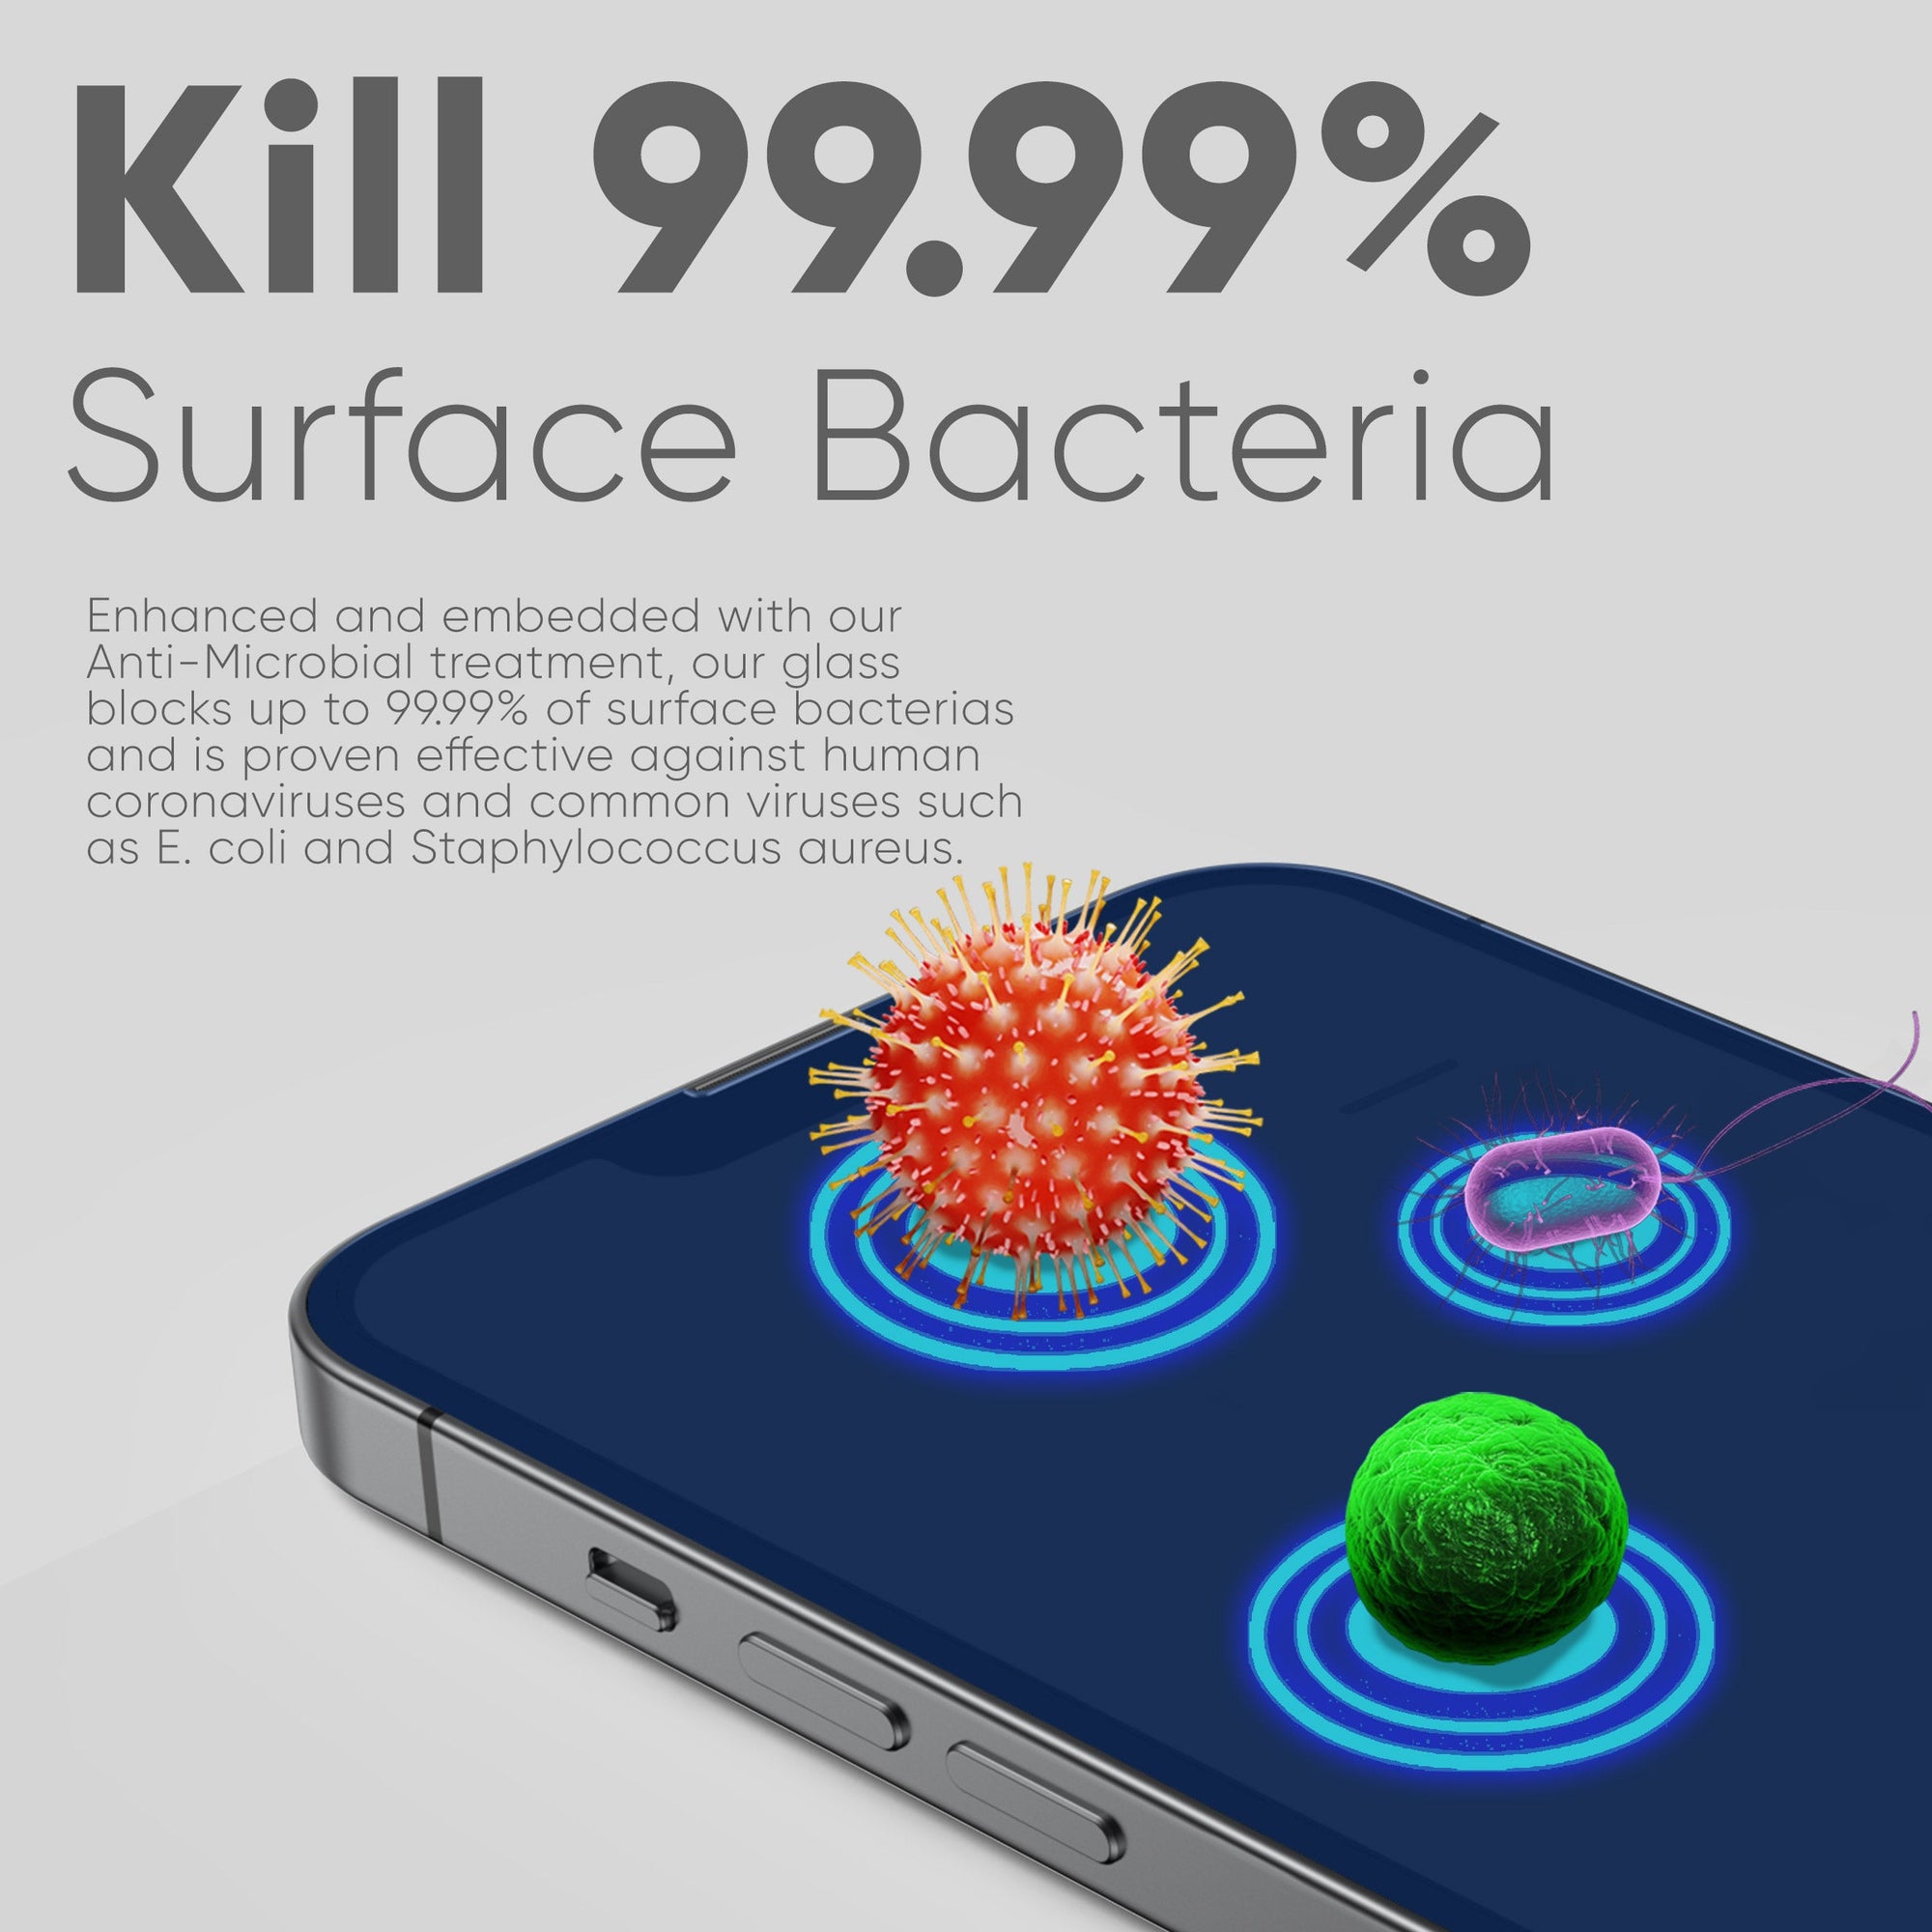 upscreen Bacteria Shield Matte Premium Antibacterial Screen